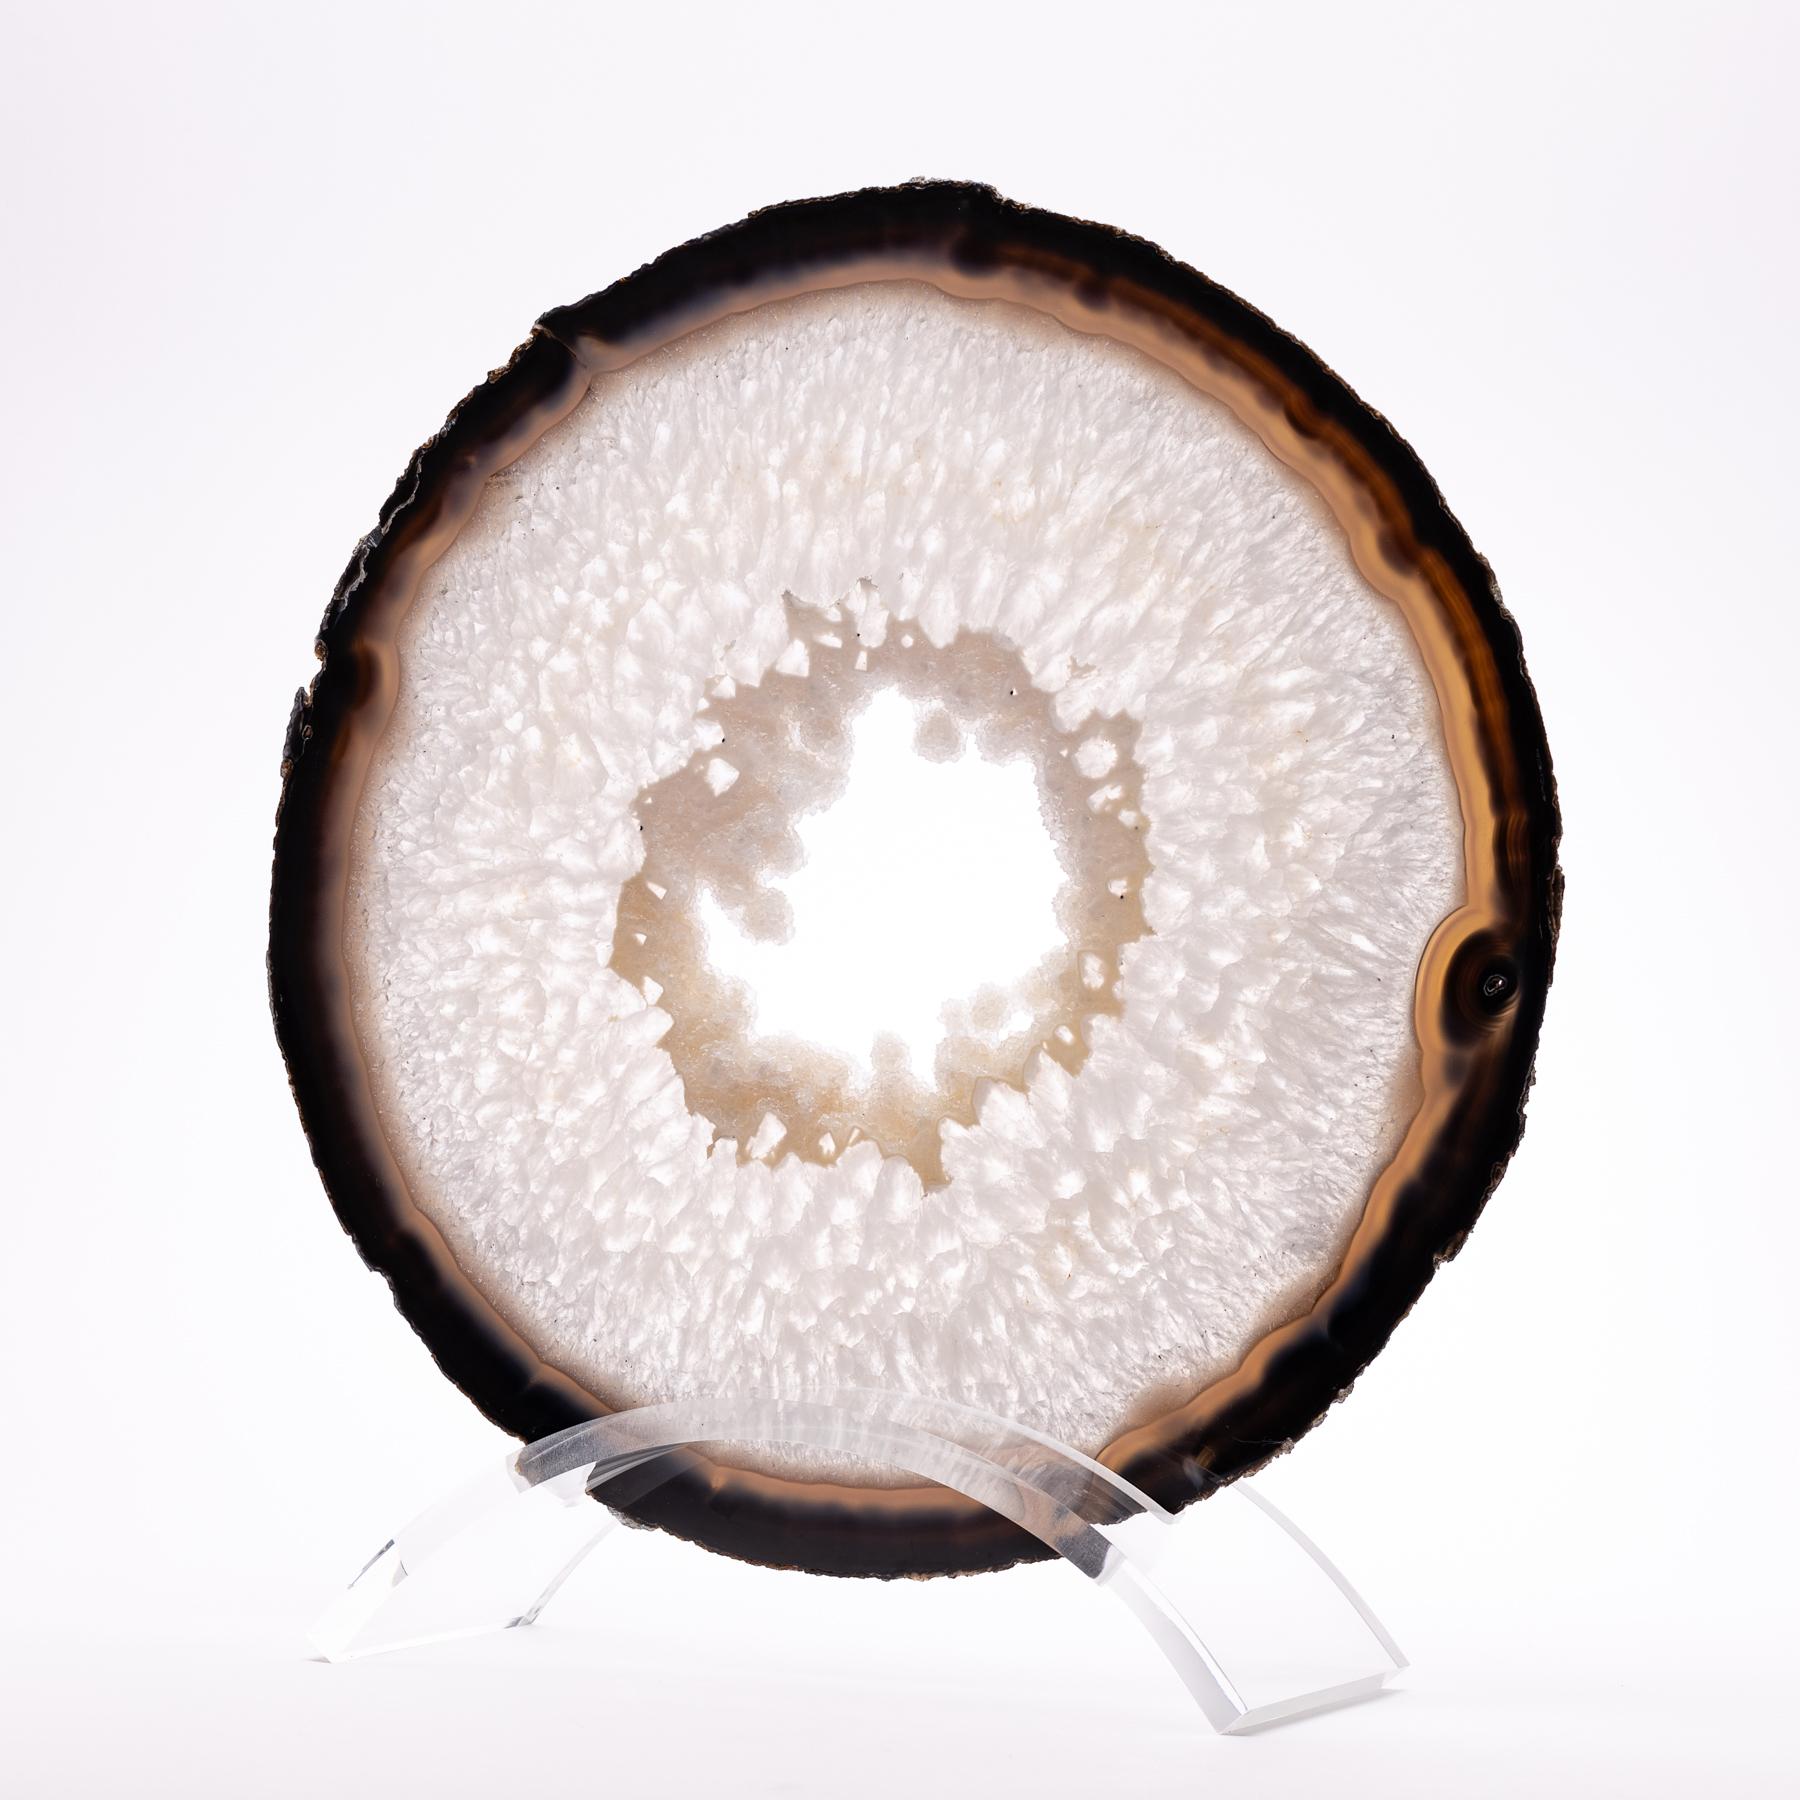 Erstklassige Achat-Platte aus Brasilien.
Achate werden in runden Knötchen geformt, die aufgeschnitten werden, um das im Stein verborgene innere Muster sichtbar zu machen. Sie entstehen in der Regel durch Ablagerungen von Kieselsäureschichten, die